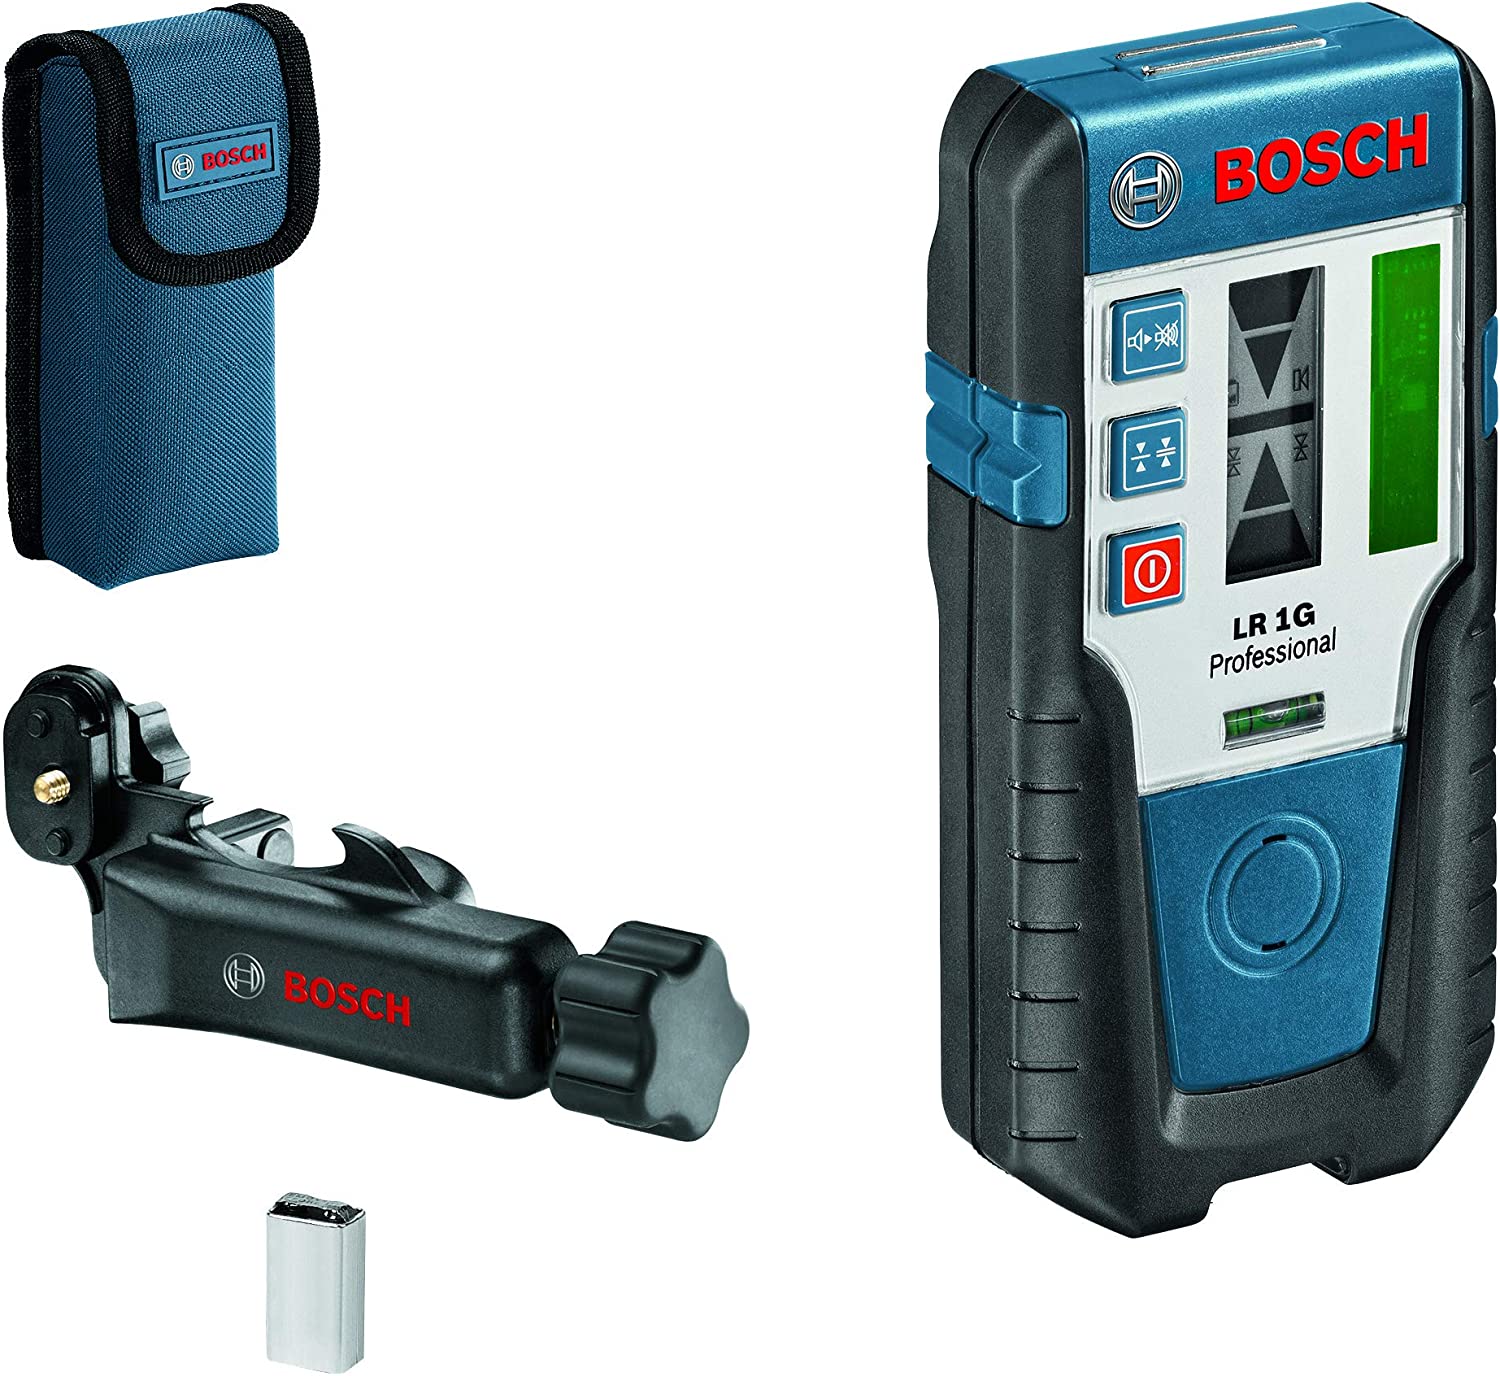 Bosch Laser receiver LR 1 G Professional (blue/black, for rotating laser GRL 300 HVG) 0601069700 (3165140583183)